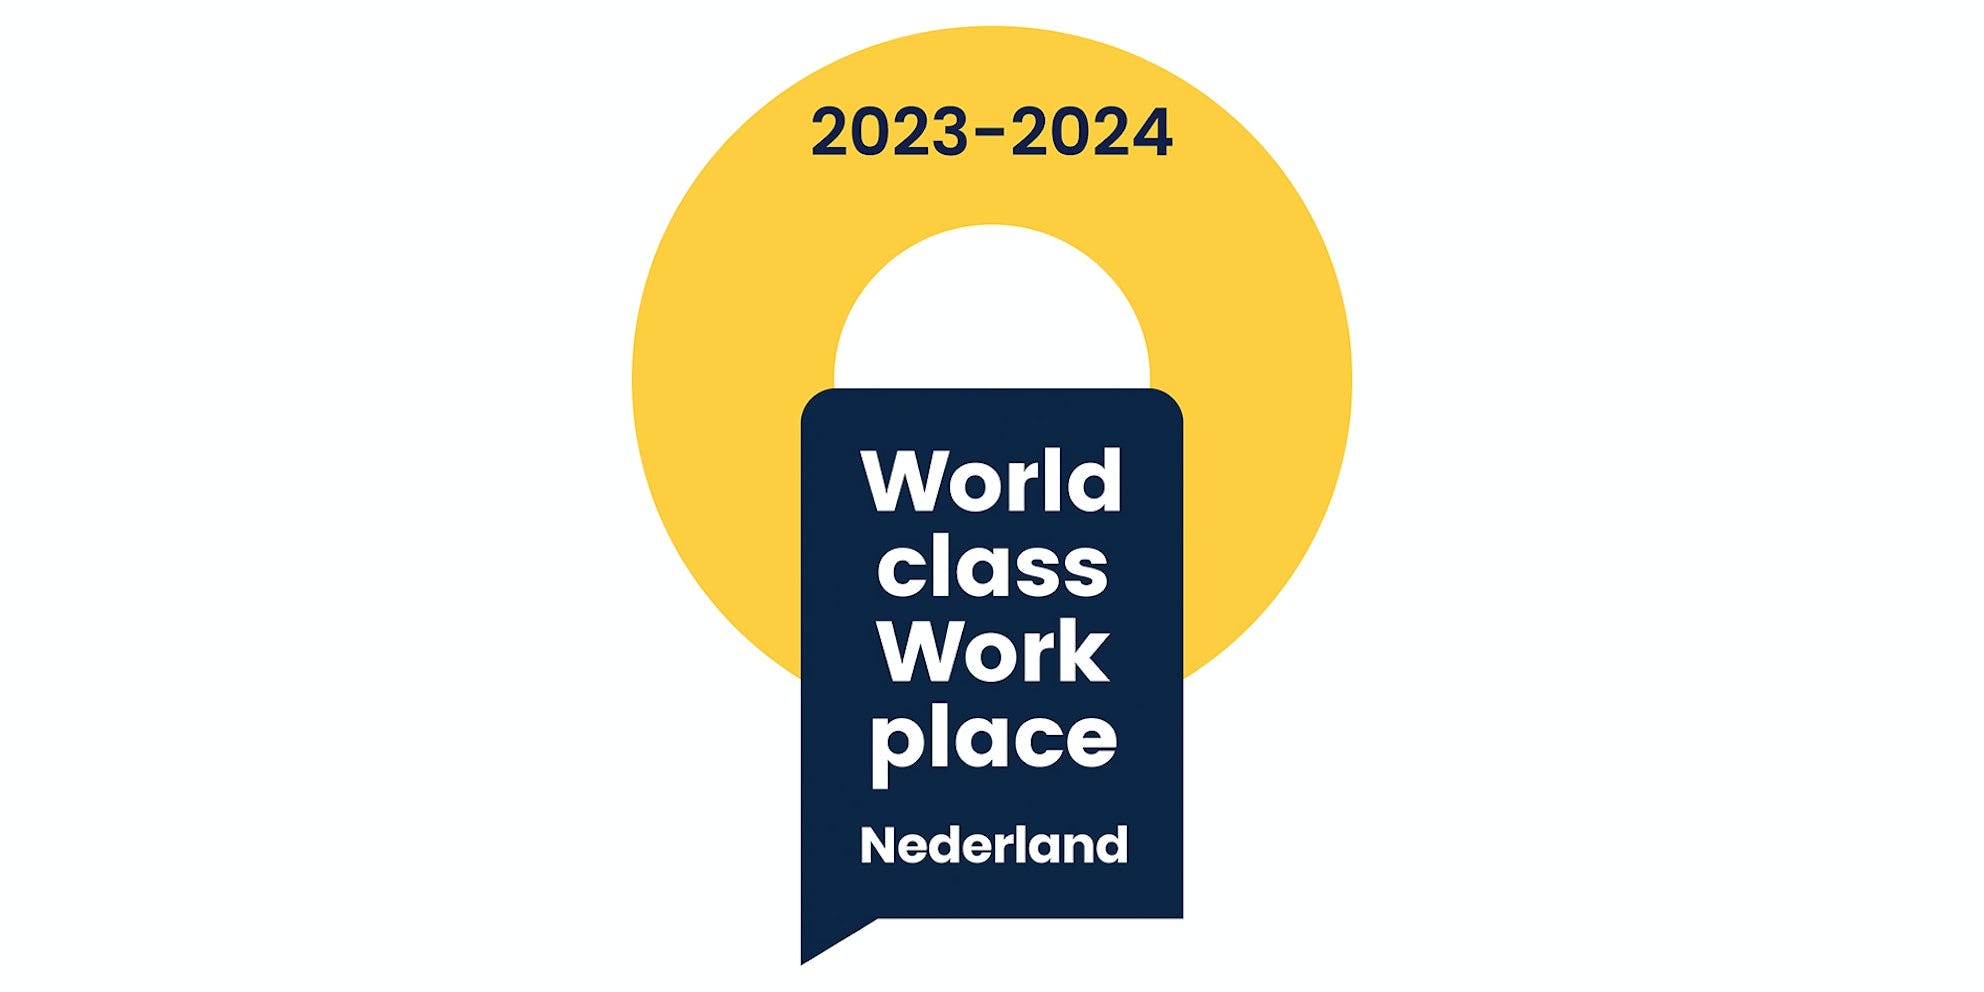 World class work place 2023-2024